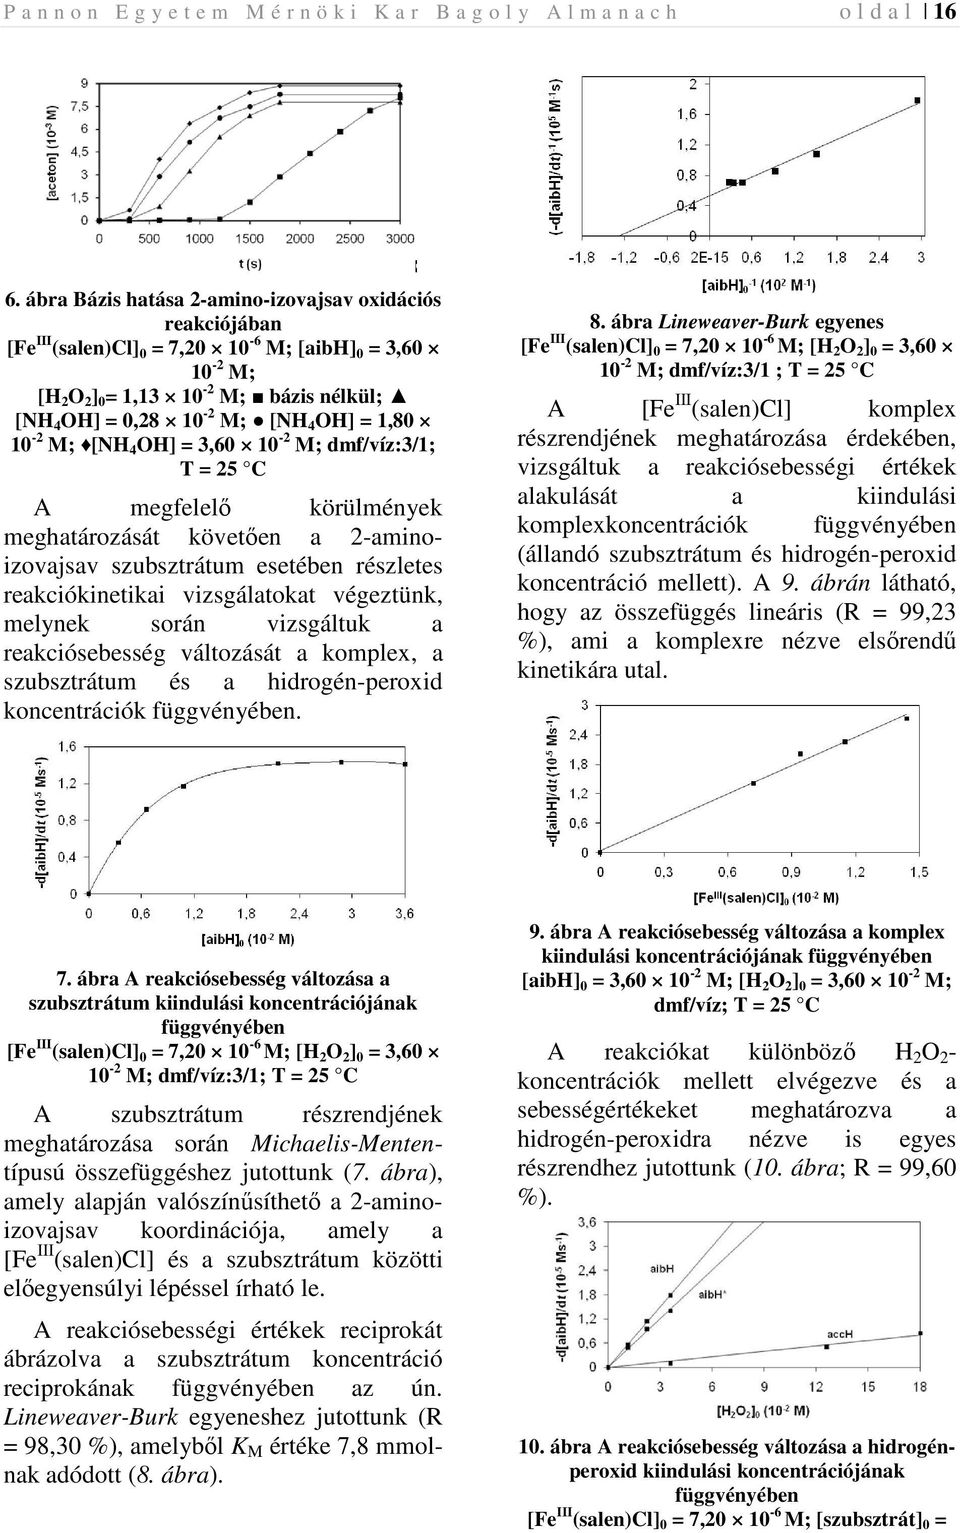 1,80 10-2 M; [NH 4 OH] = 3,60 10-2 M; dmf/víz:3/1; T = 25 C A megfelelı körülmények meghatározását követıen a 2-aminoizovajsav szubsztrátum esetében részletes reakciókinetikai vizsgálatokat